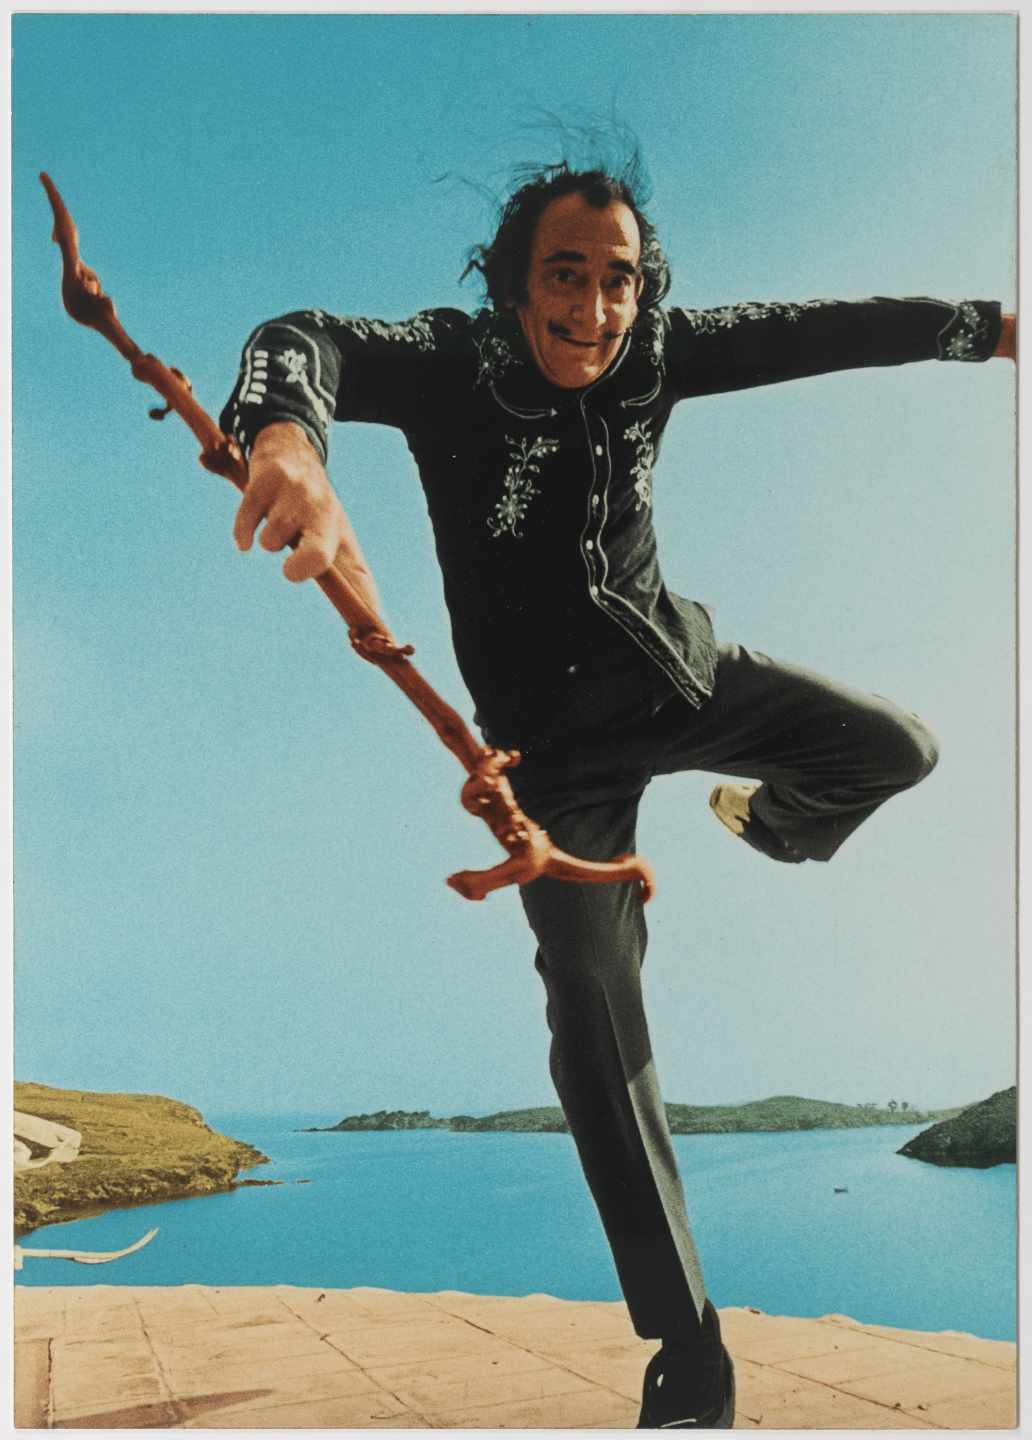 Foto de Salvador Dalí tomada por Robert Whitaker. Fundación Gala Dalí.